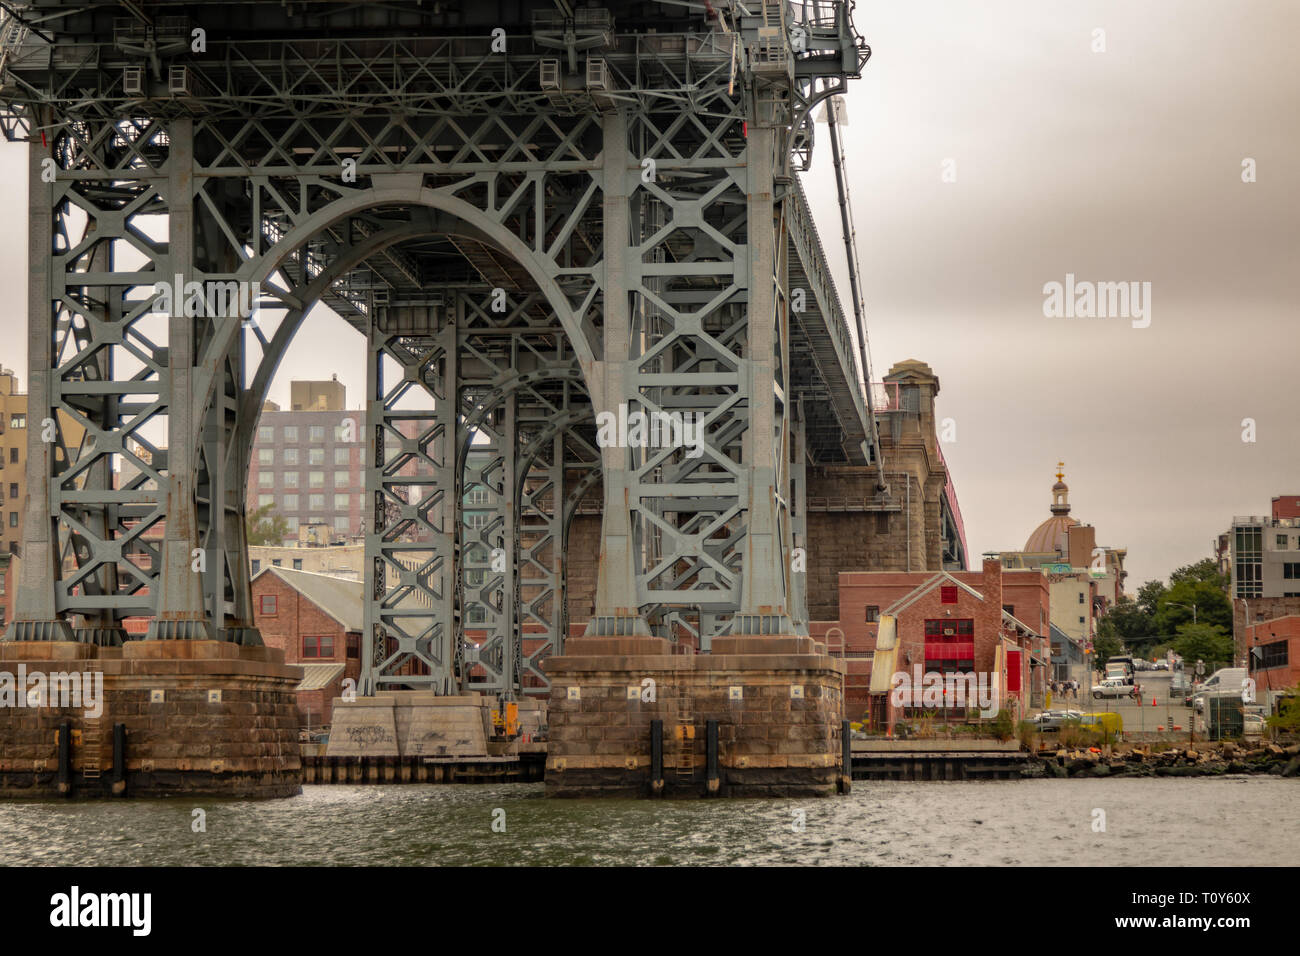 Le Williamsburg Bridge, un pont suspendu de la ville de New York, franchit l'East River reliant le Lower East Side de Manhattan, avec le quartier de Williamsburg à Brooklyn. Banque D'Images